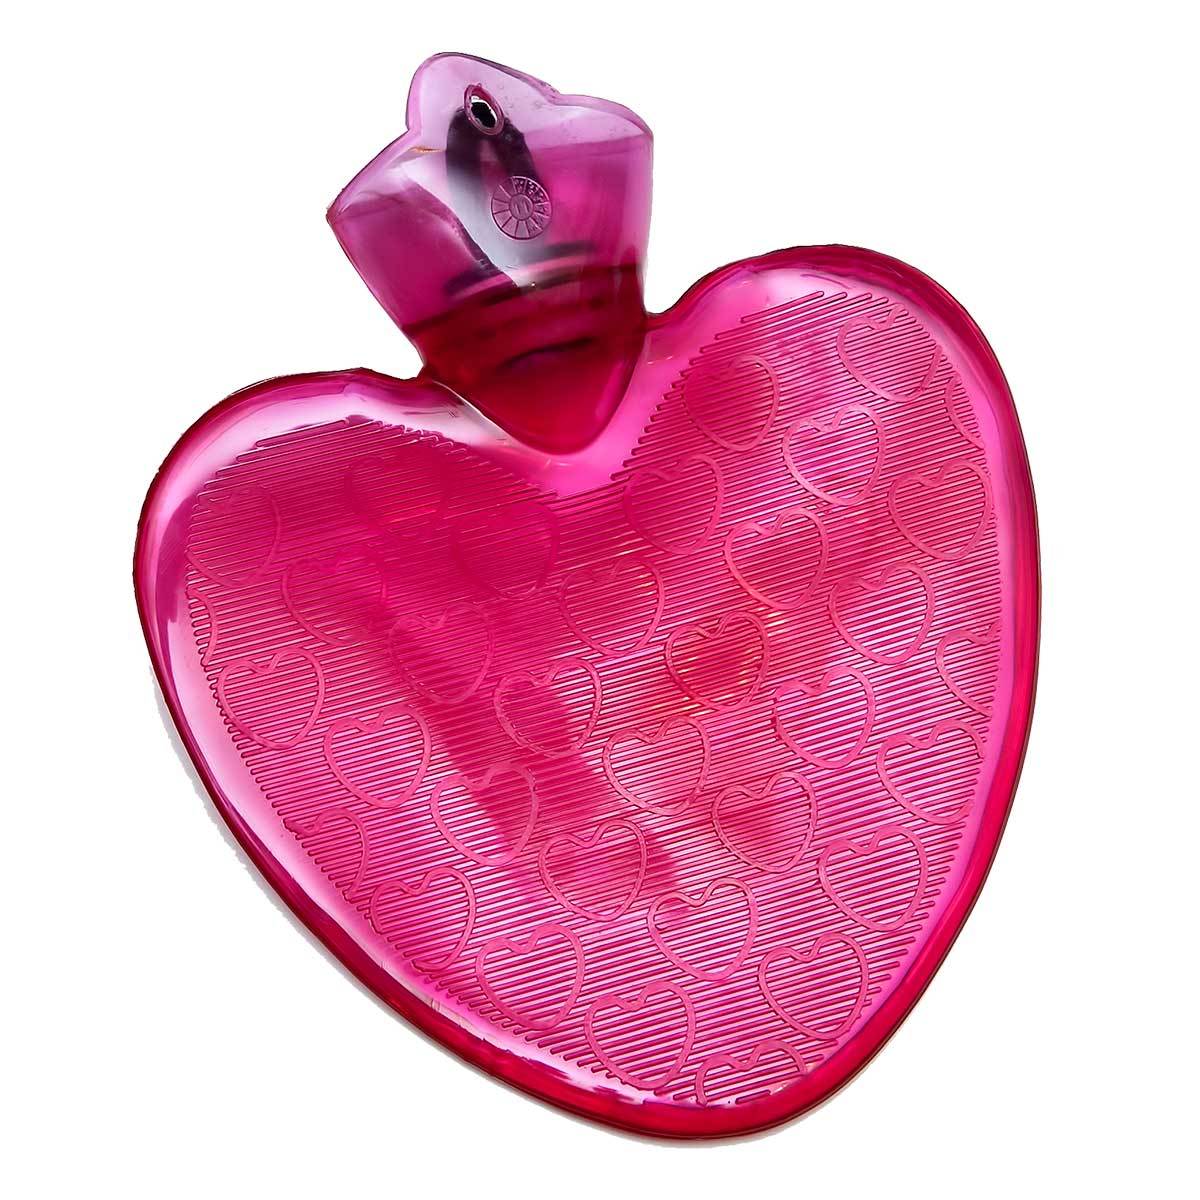 Heart Shaped Hot Water Bottle